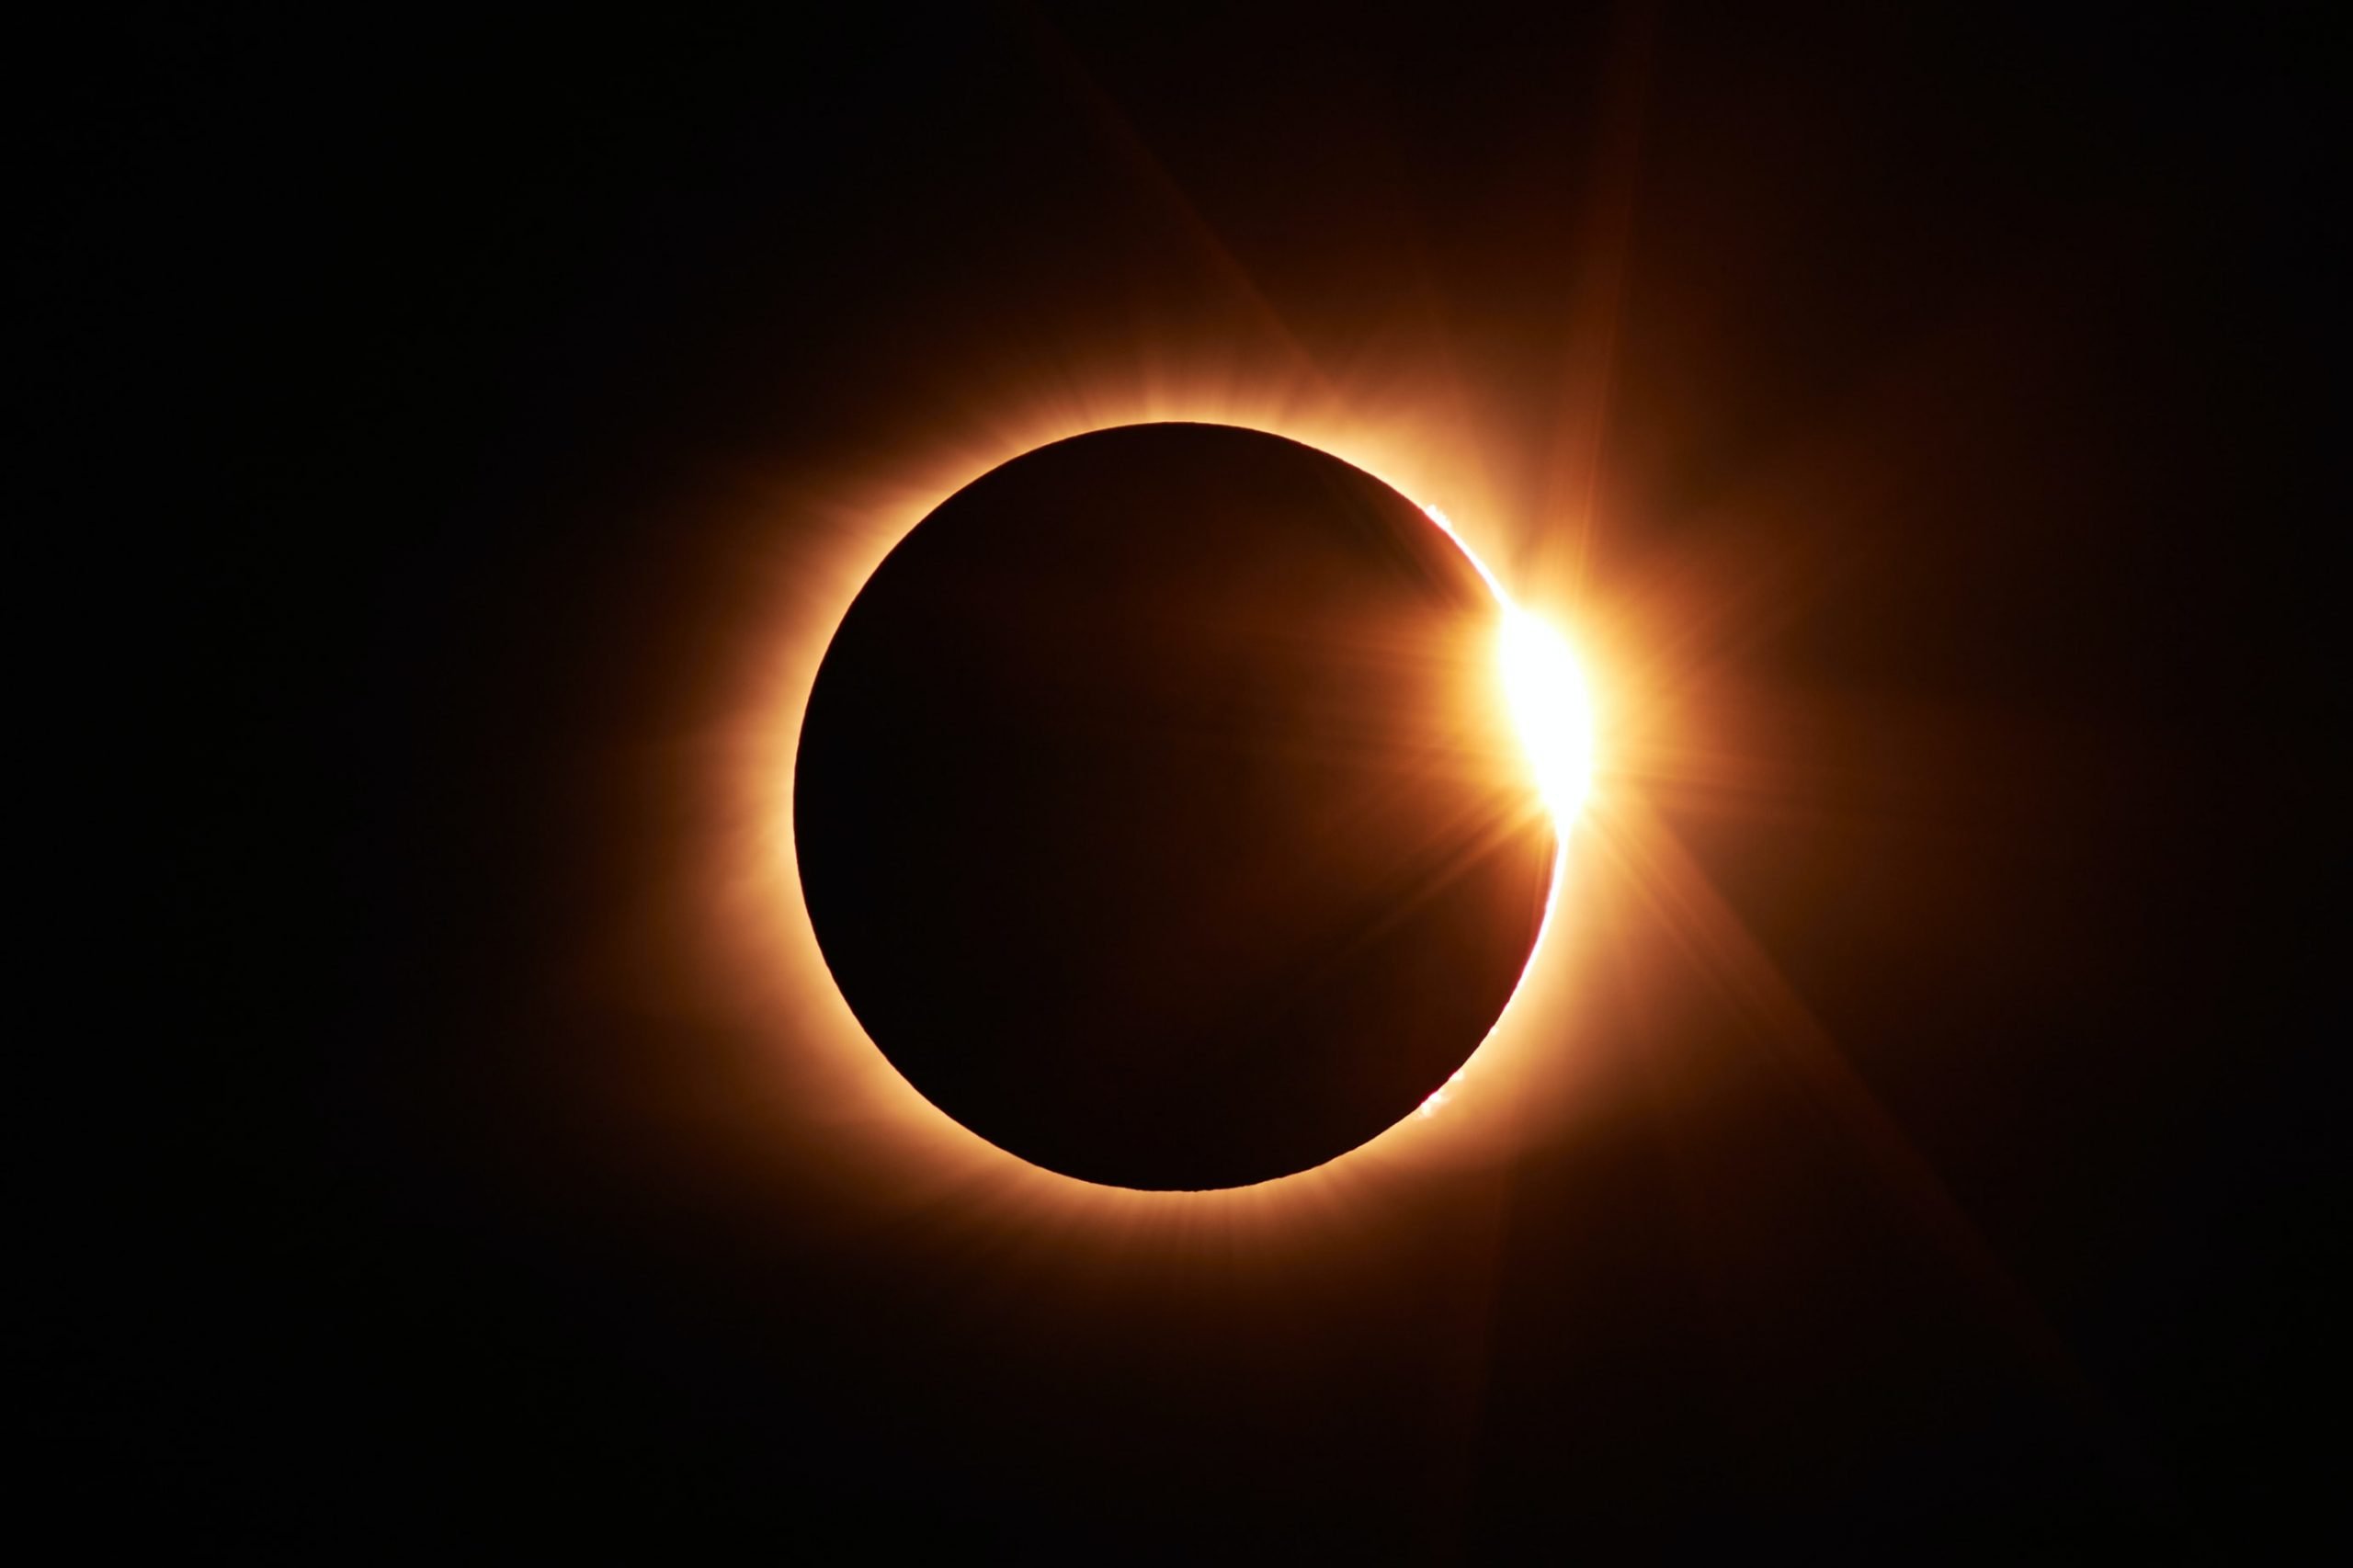 L’eclissi anulare di sole del 10 giugno 2021 sarà visibile anche in Piemonte